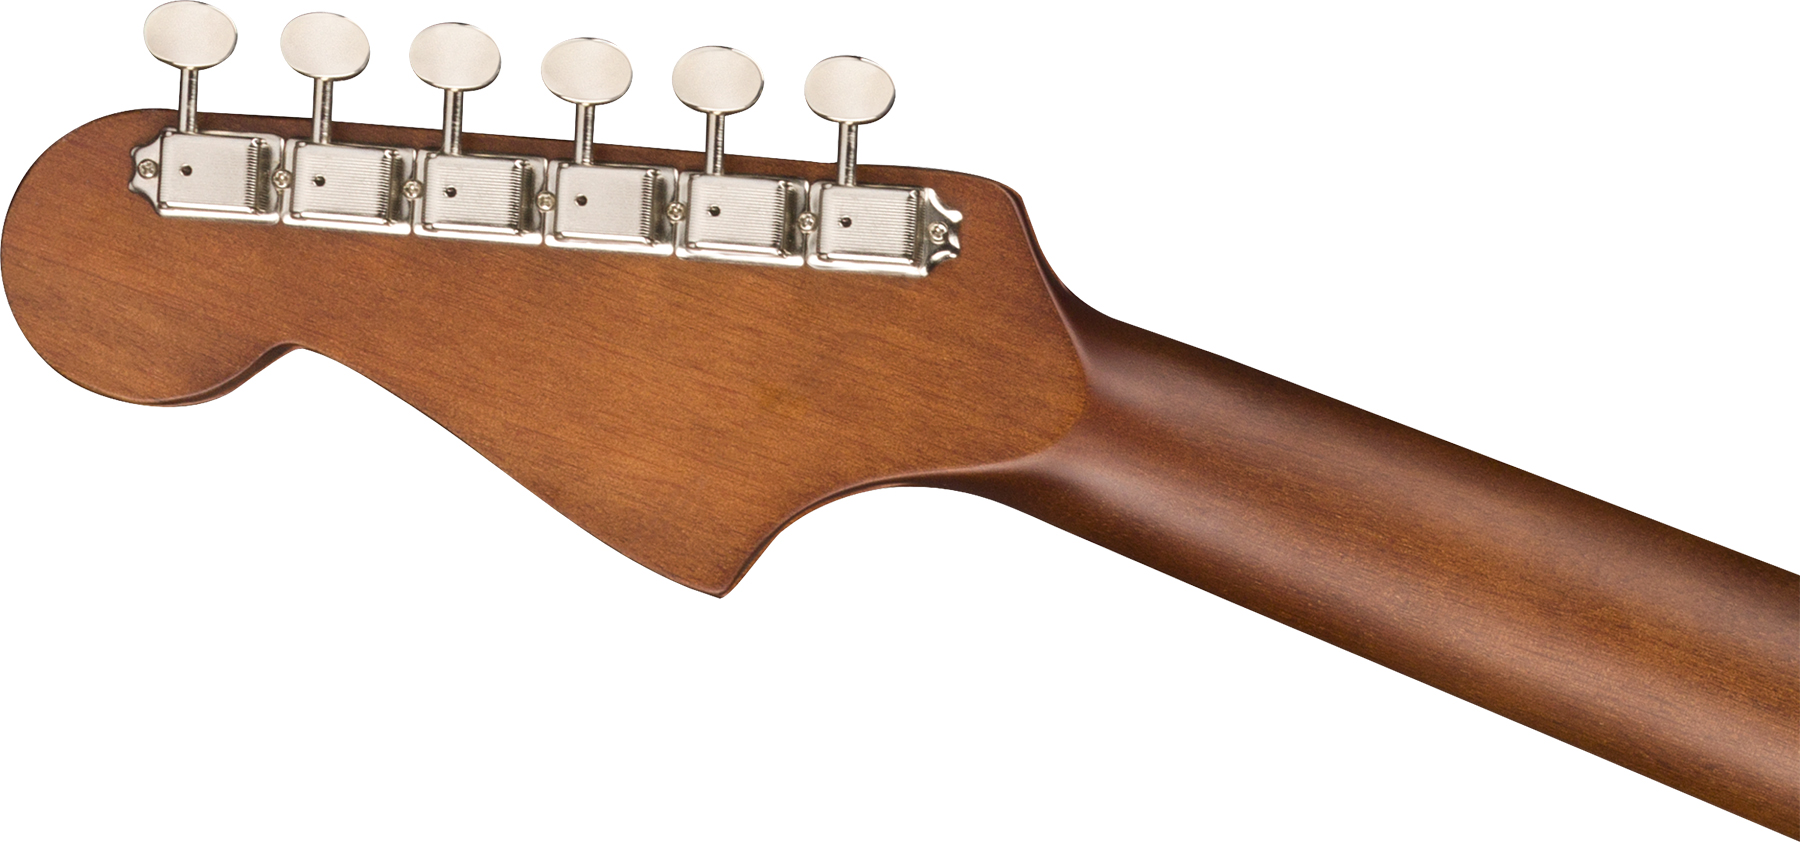 Fender Redondo California Player Dreadnought Cw Epicea Acajou Wal - Natural - Guitarra electro acustica - Variation 4